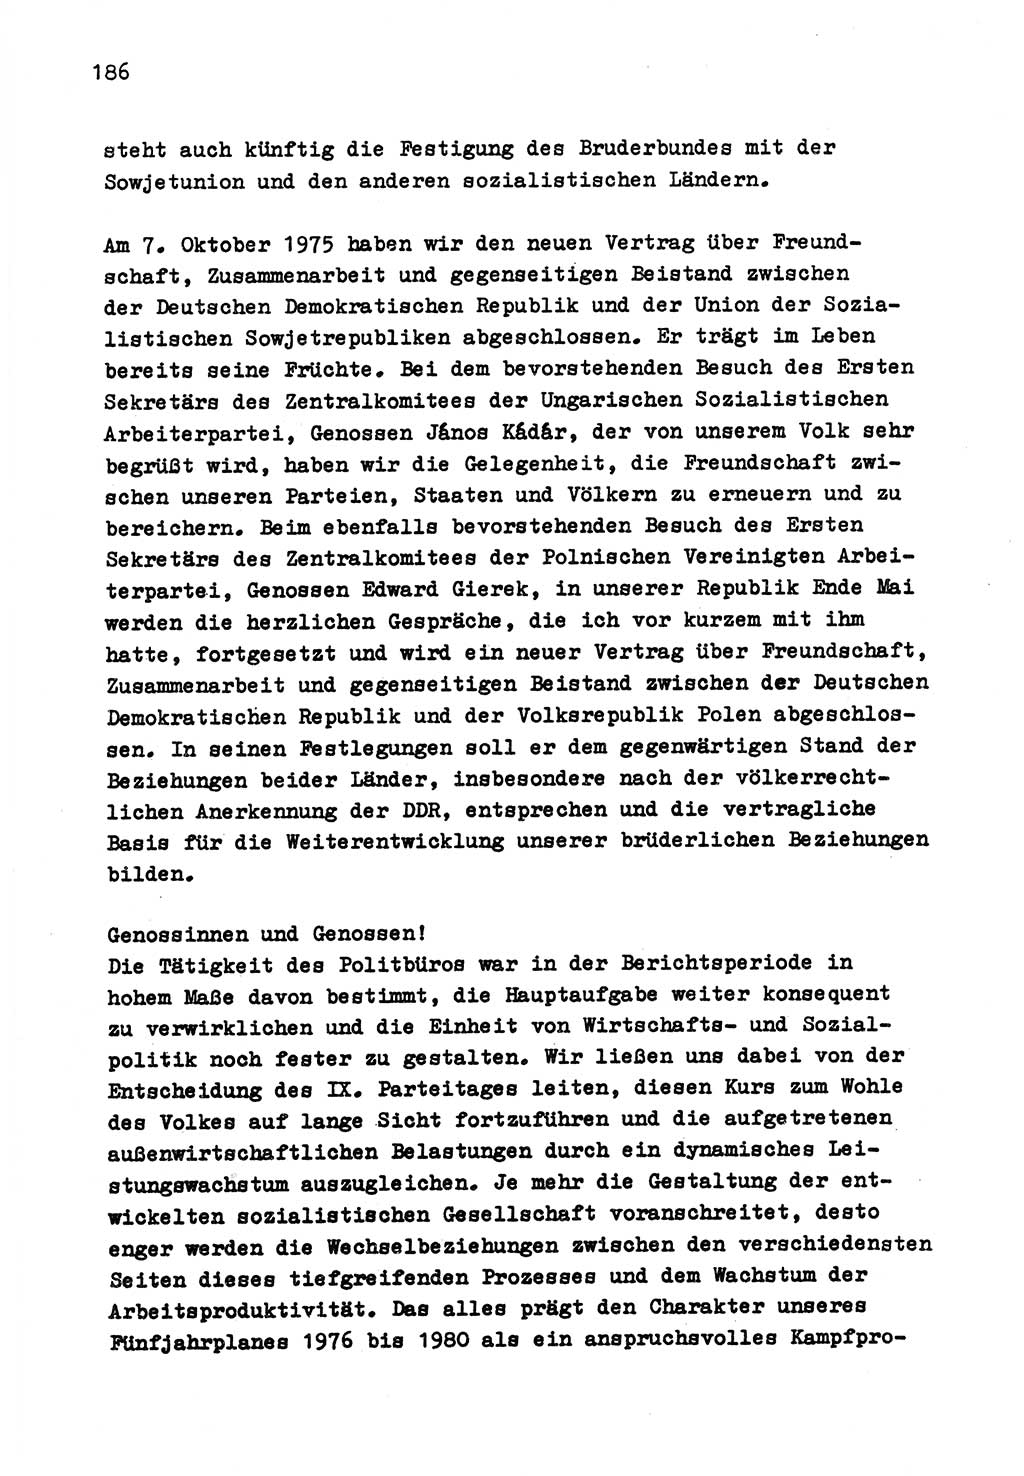 Zu Fragen der Parteiarbeit [Sozialistische Einheitspartei Deutschlands (SED) Deutsche Demokratische Republik (DDR)] 1979, Seite 186 (Fr. PA SED DDR 1979, S. 186)